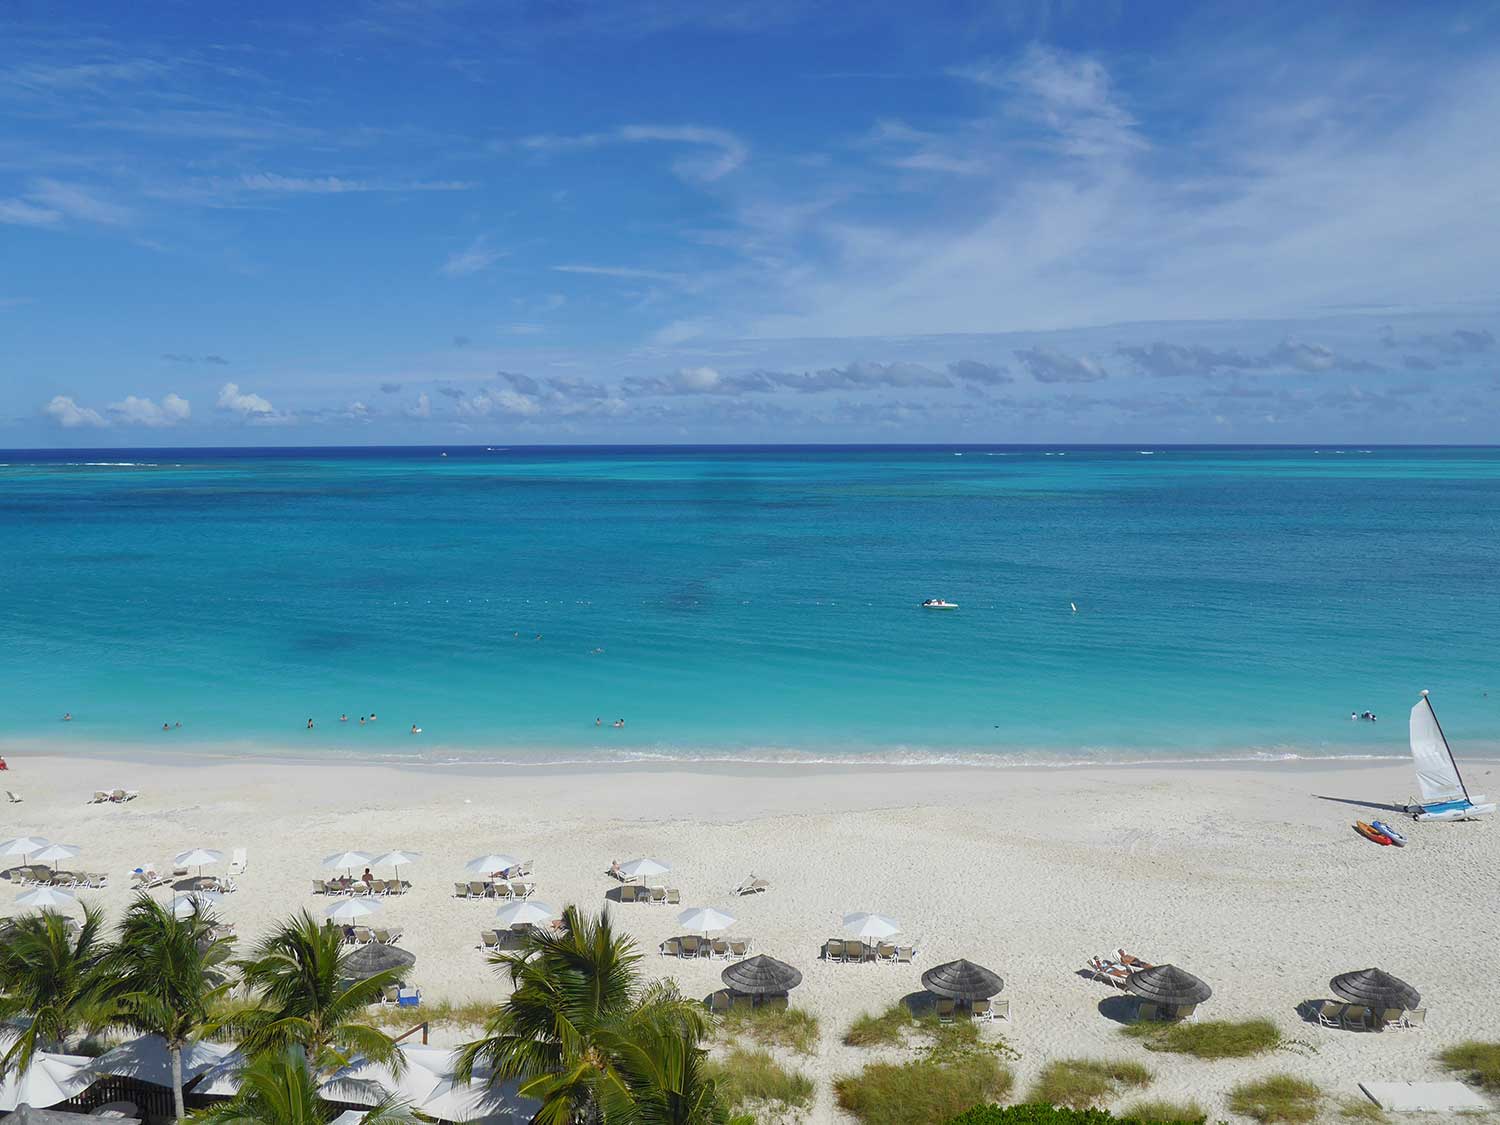 Turks and Caicos boast beautiful beaches